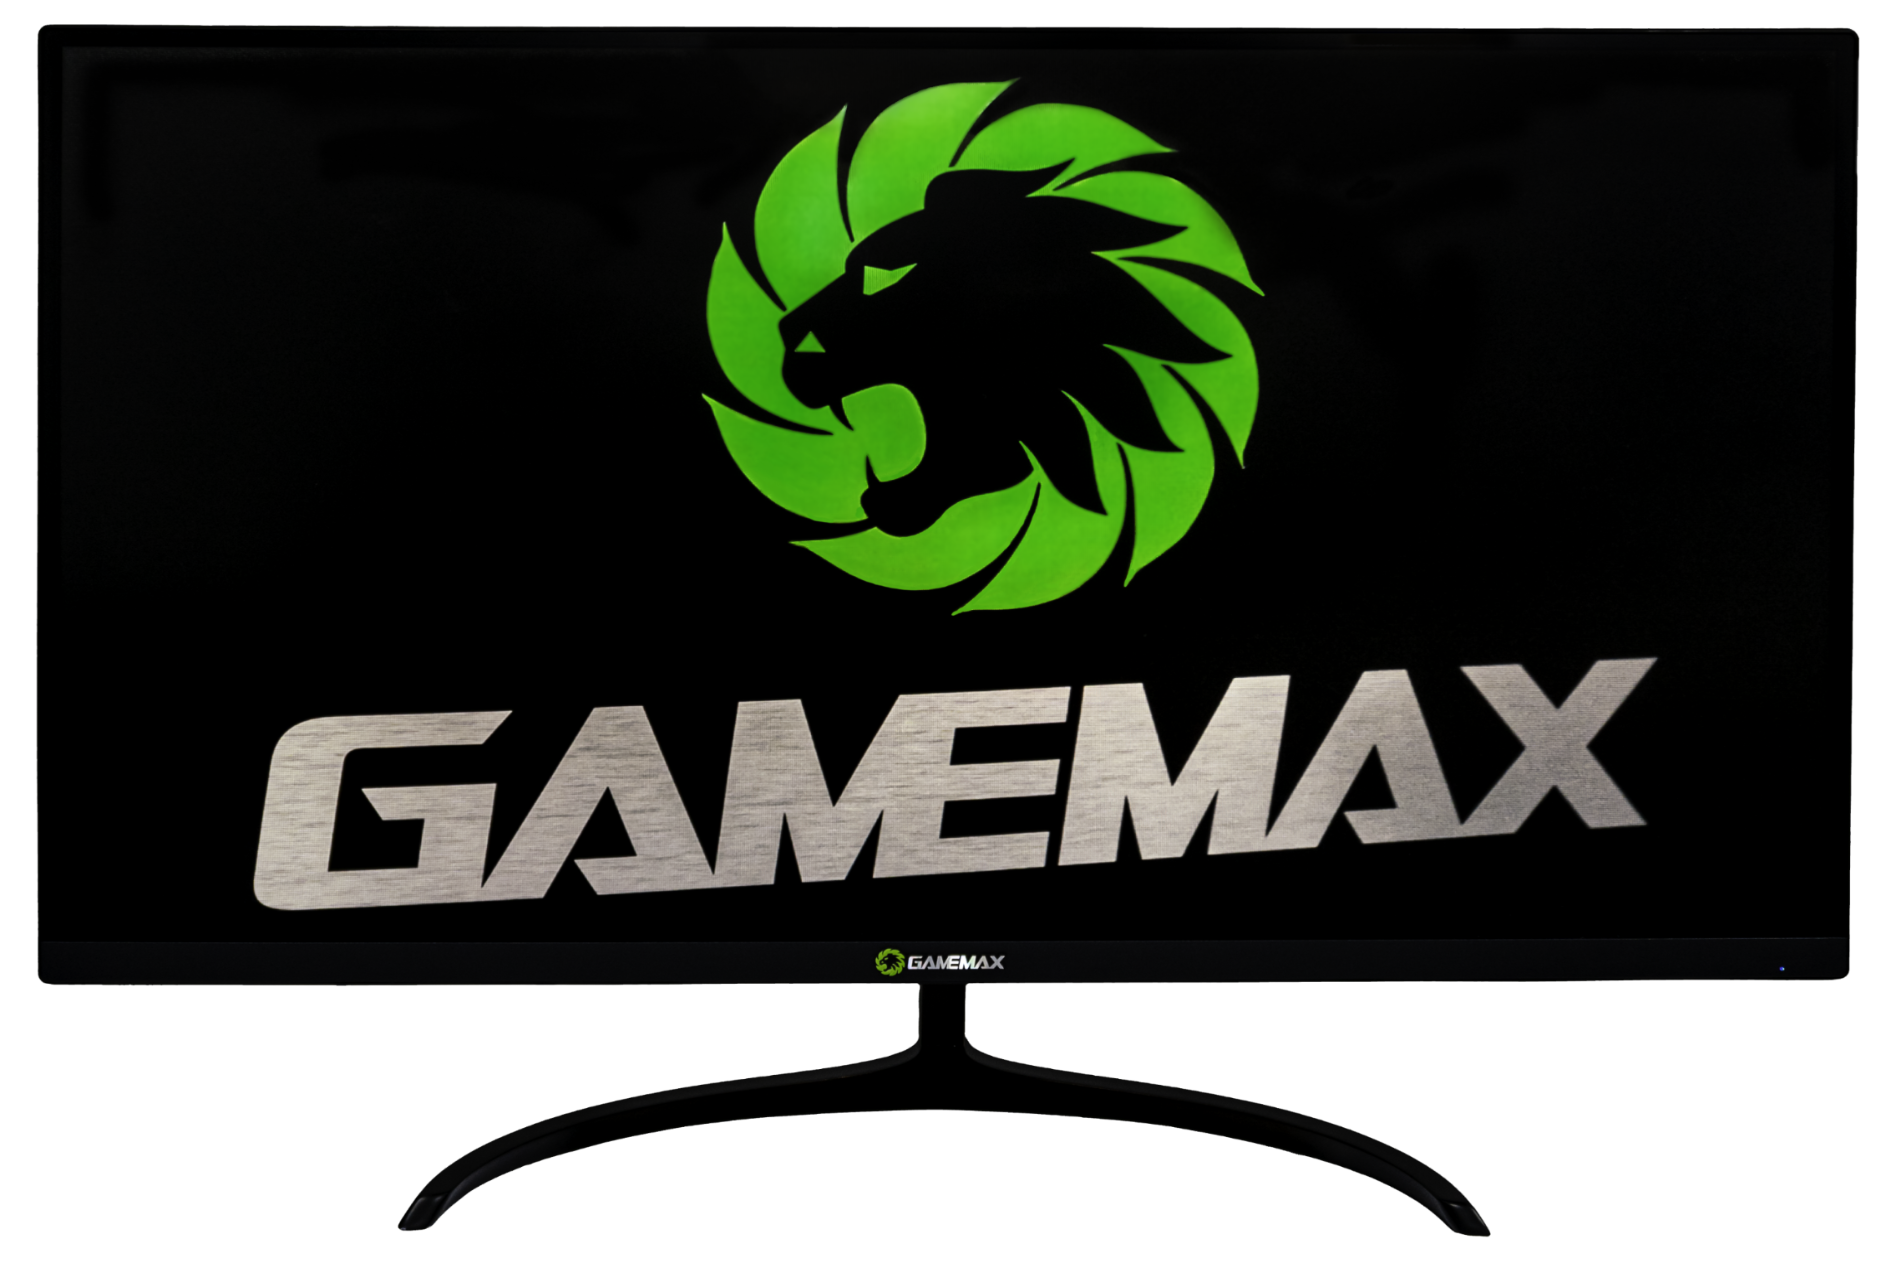 Gamemax - Monitor GAMEMAX 27 Preto Plano 144Hz 1440P 1ms